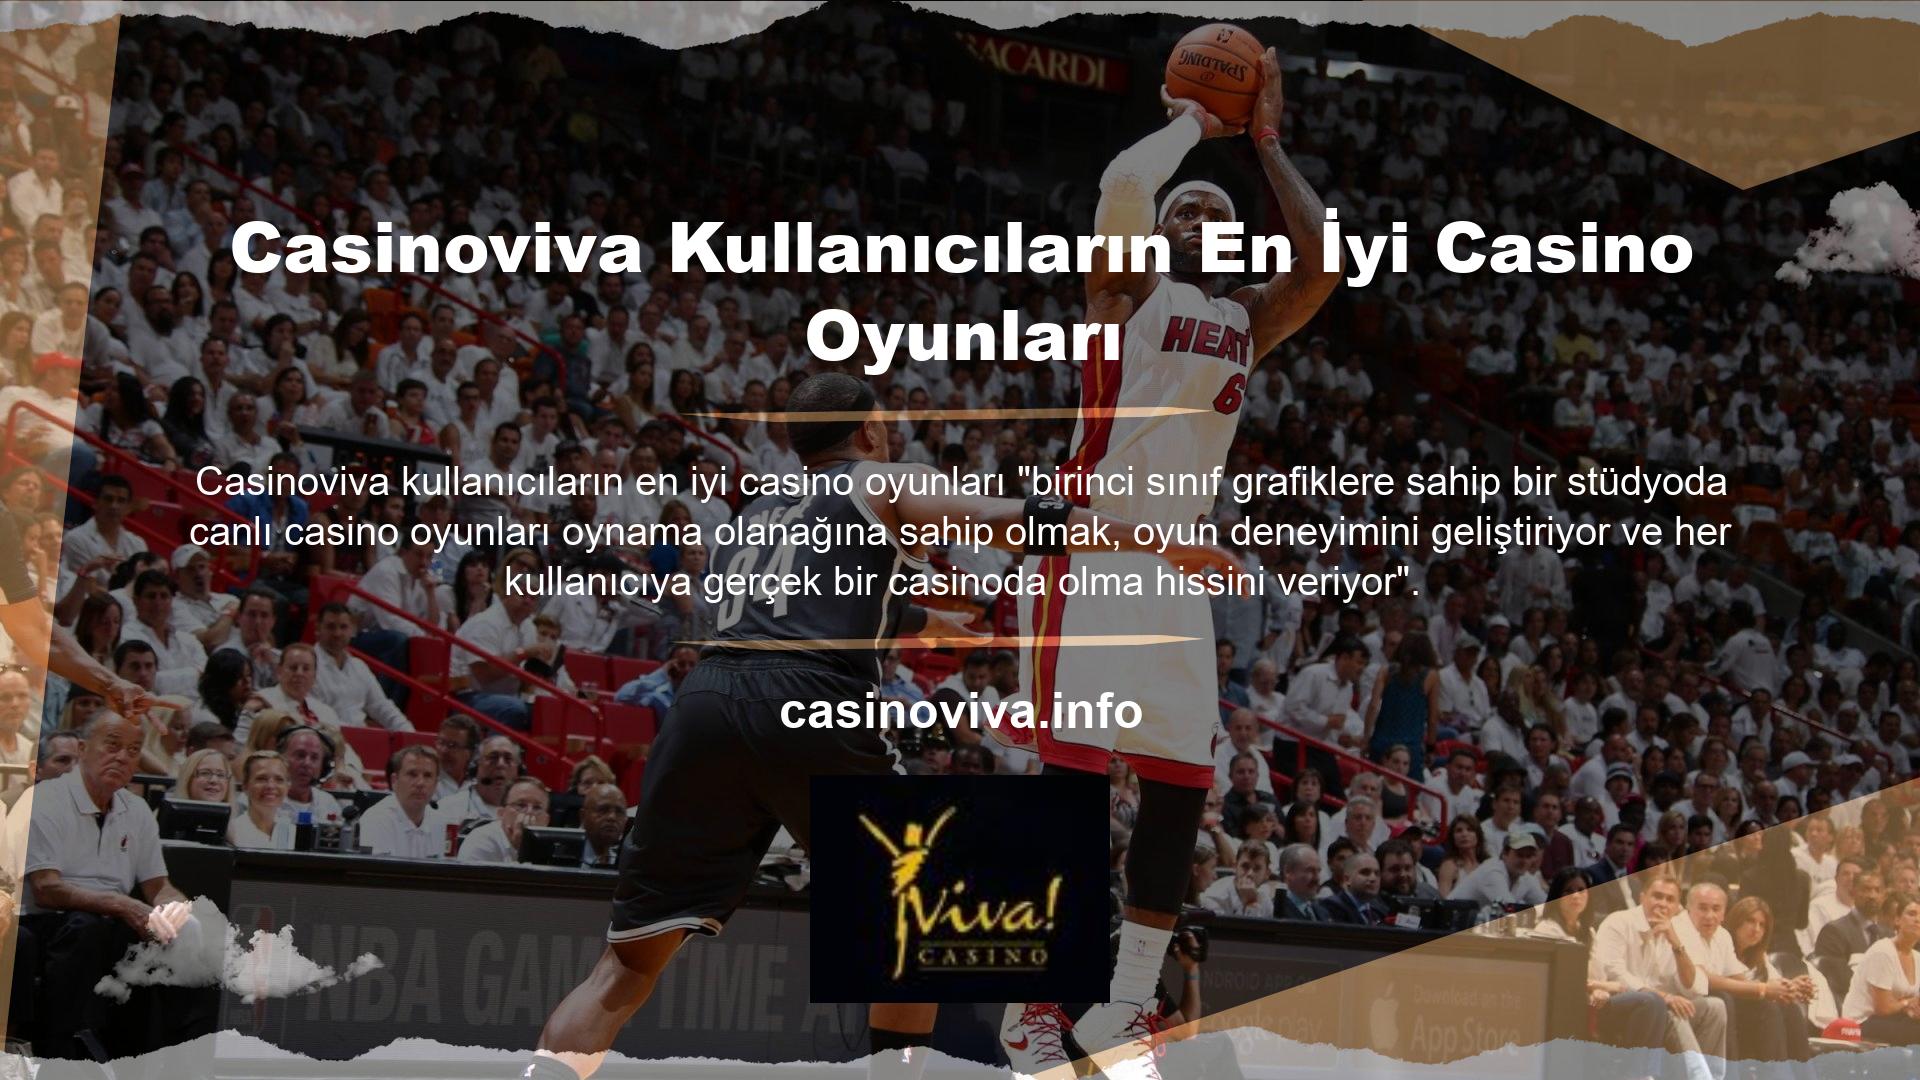 Casinoviva casino siteleri tüm oyunlarında Türk usulü bahis seçenekleri sunarak para kazanma şansınızı artırma fırsatı sağlar